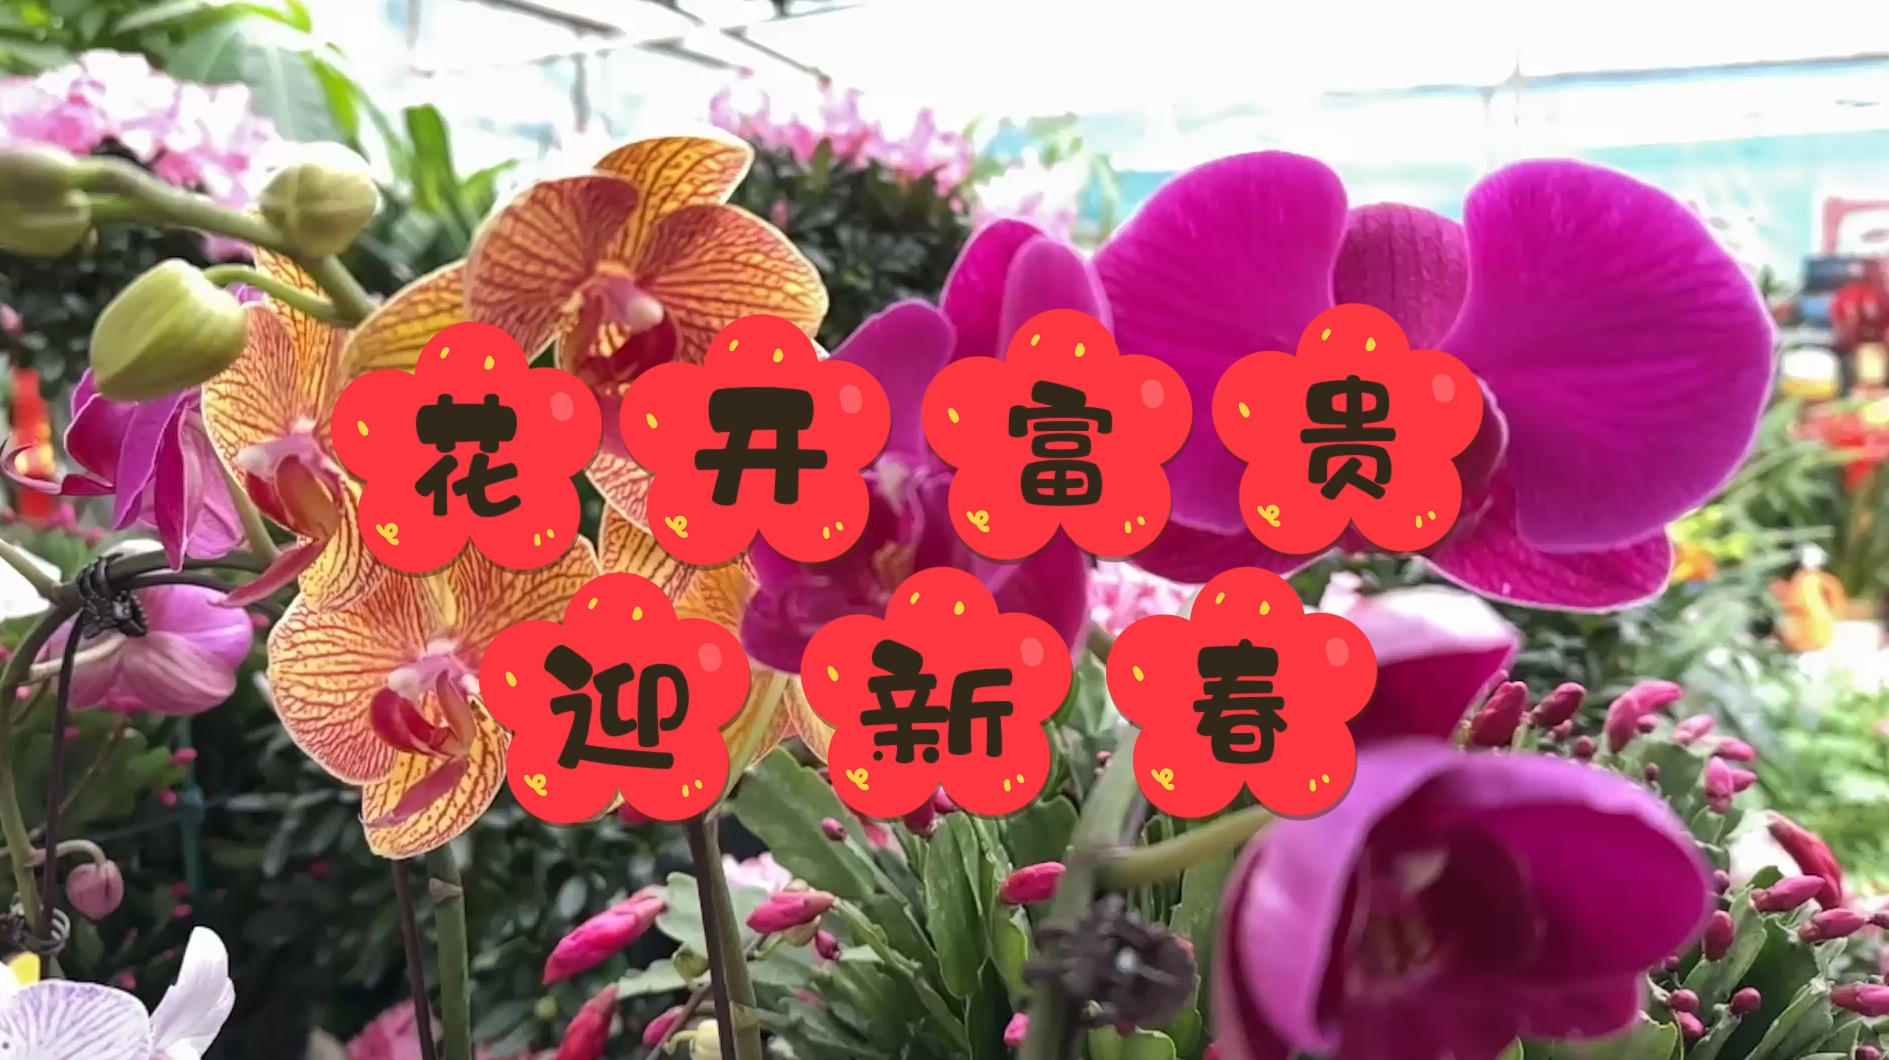 【邹视频·新闻】33秒|花开富贵迎新春